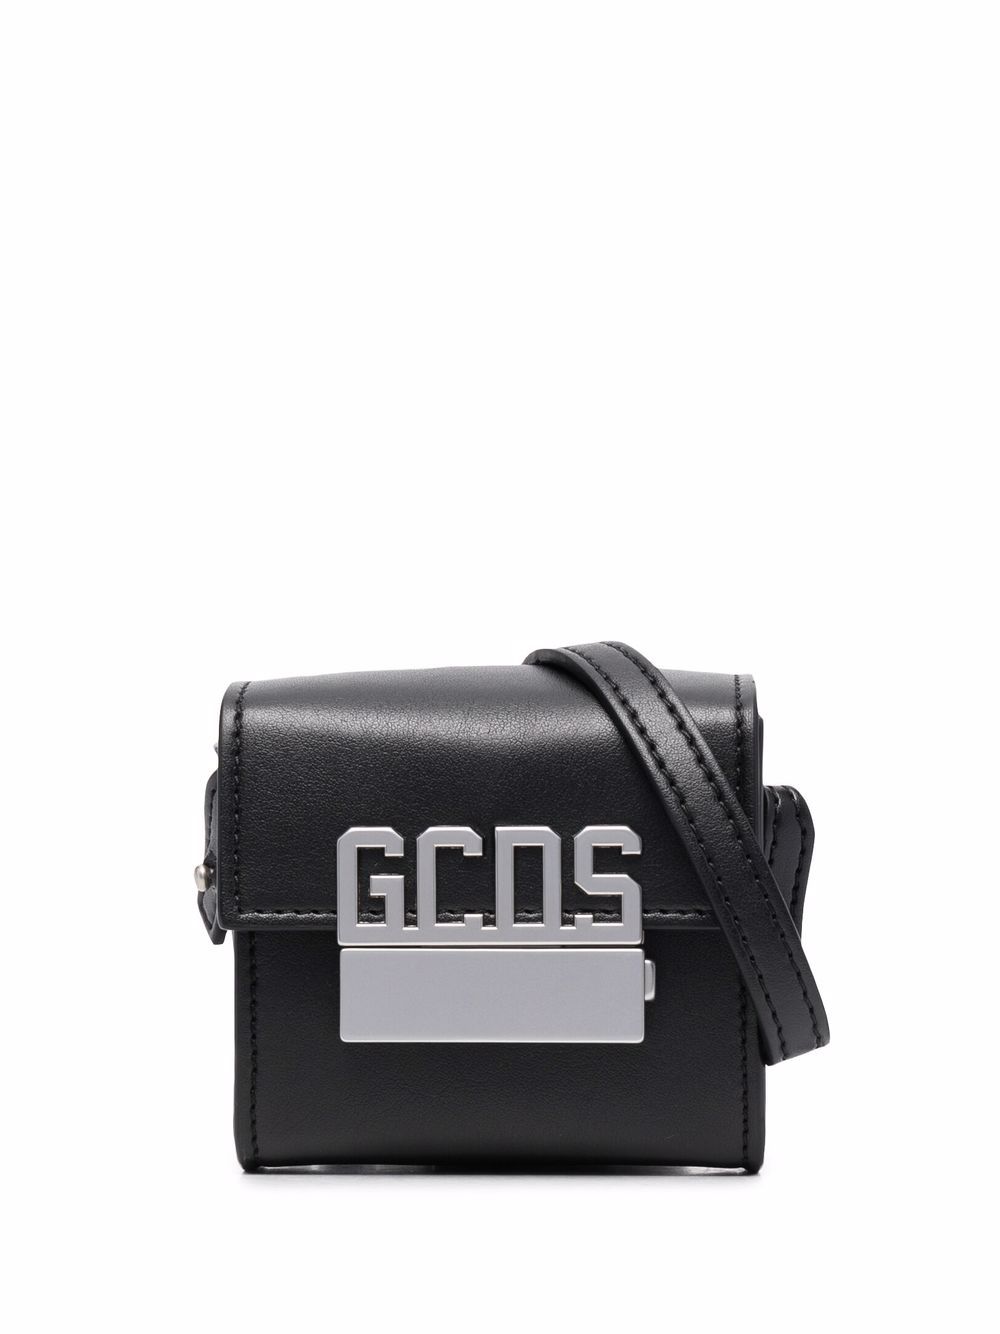 фото Gcds сумка на плечо с логотипом